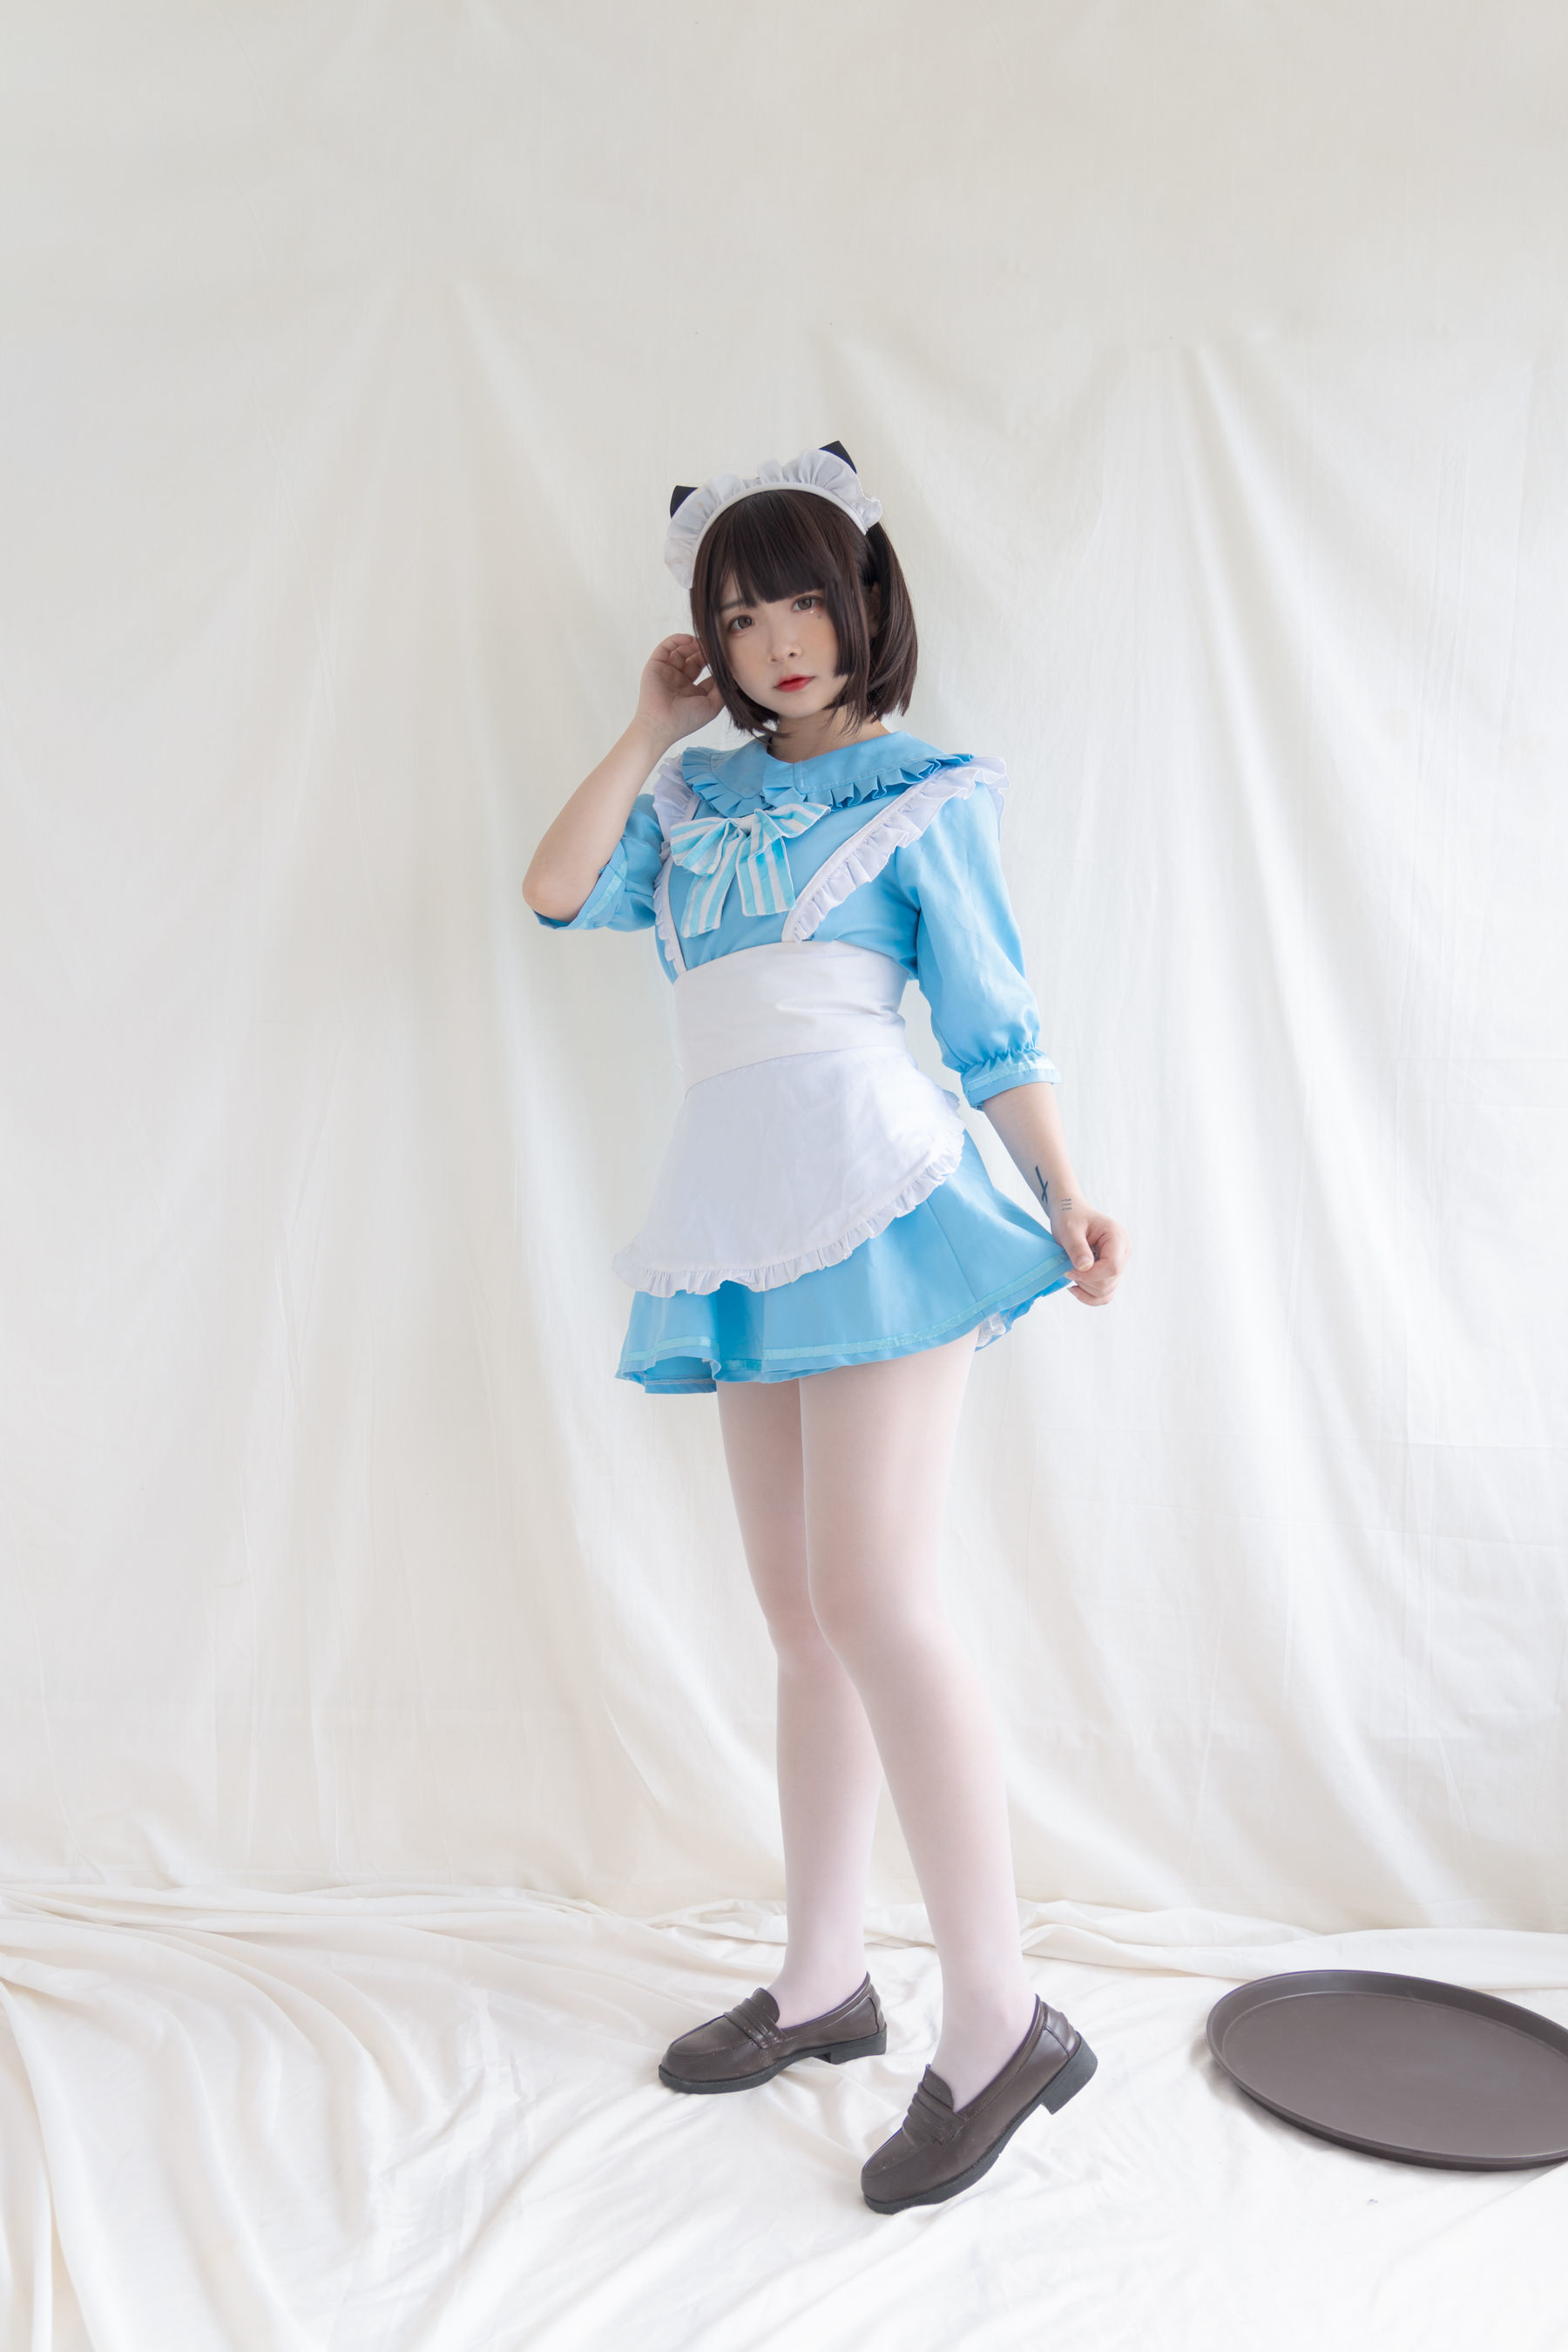 [COS welfare] second yuan beauty Guichuan Kagura “blue kitten maid” photo set